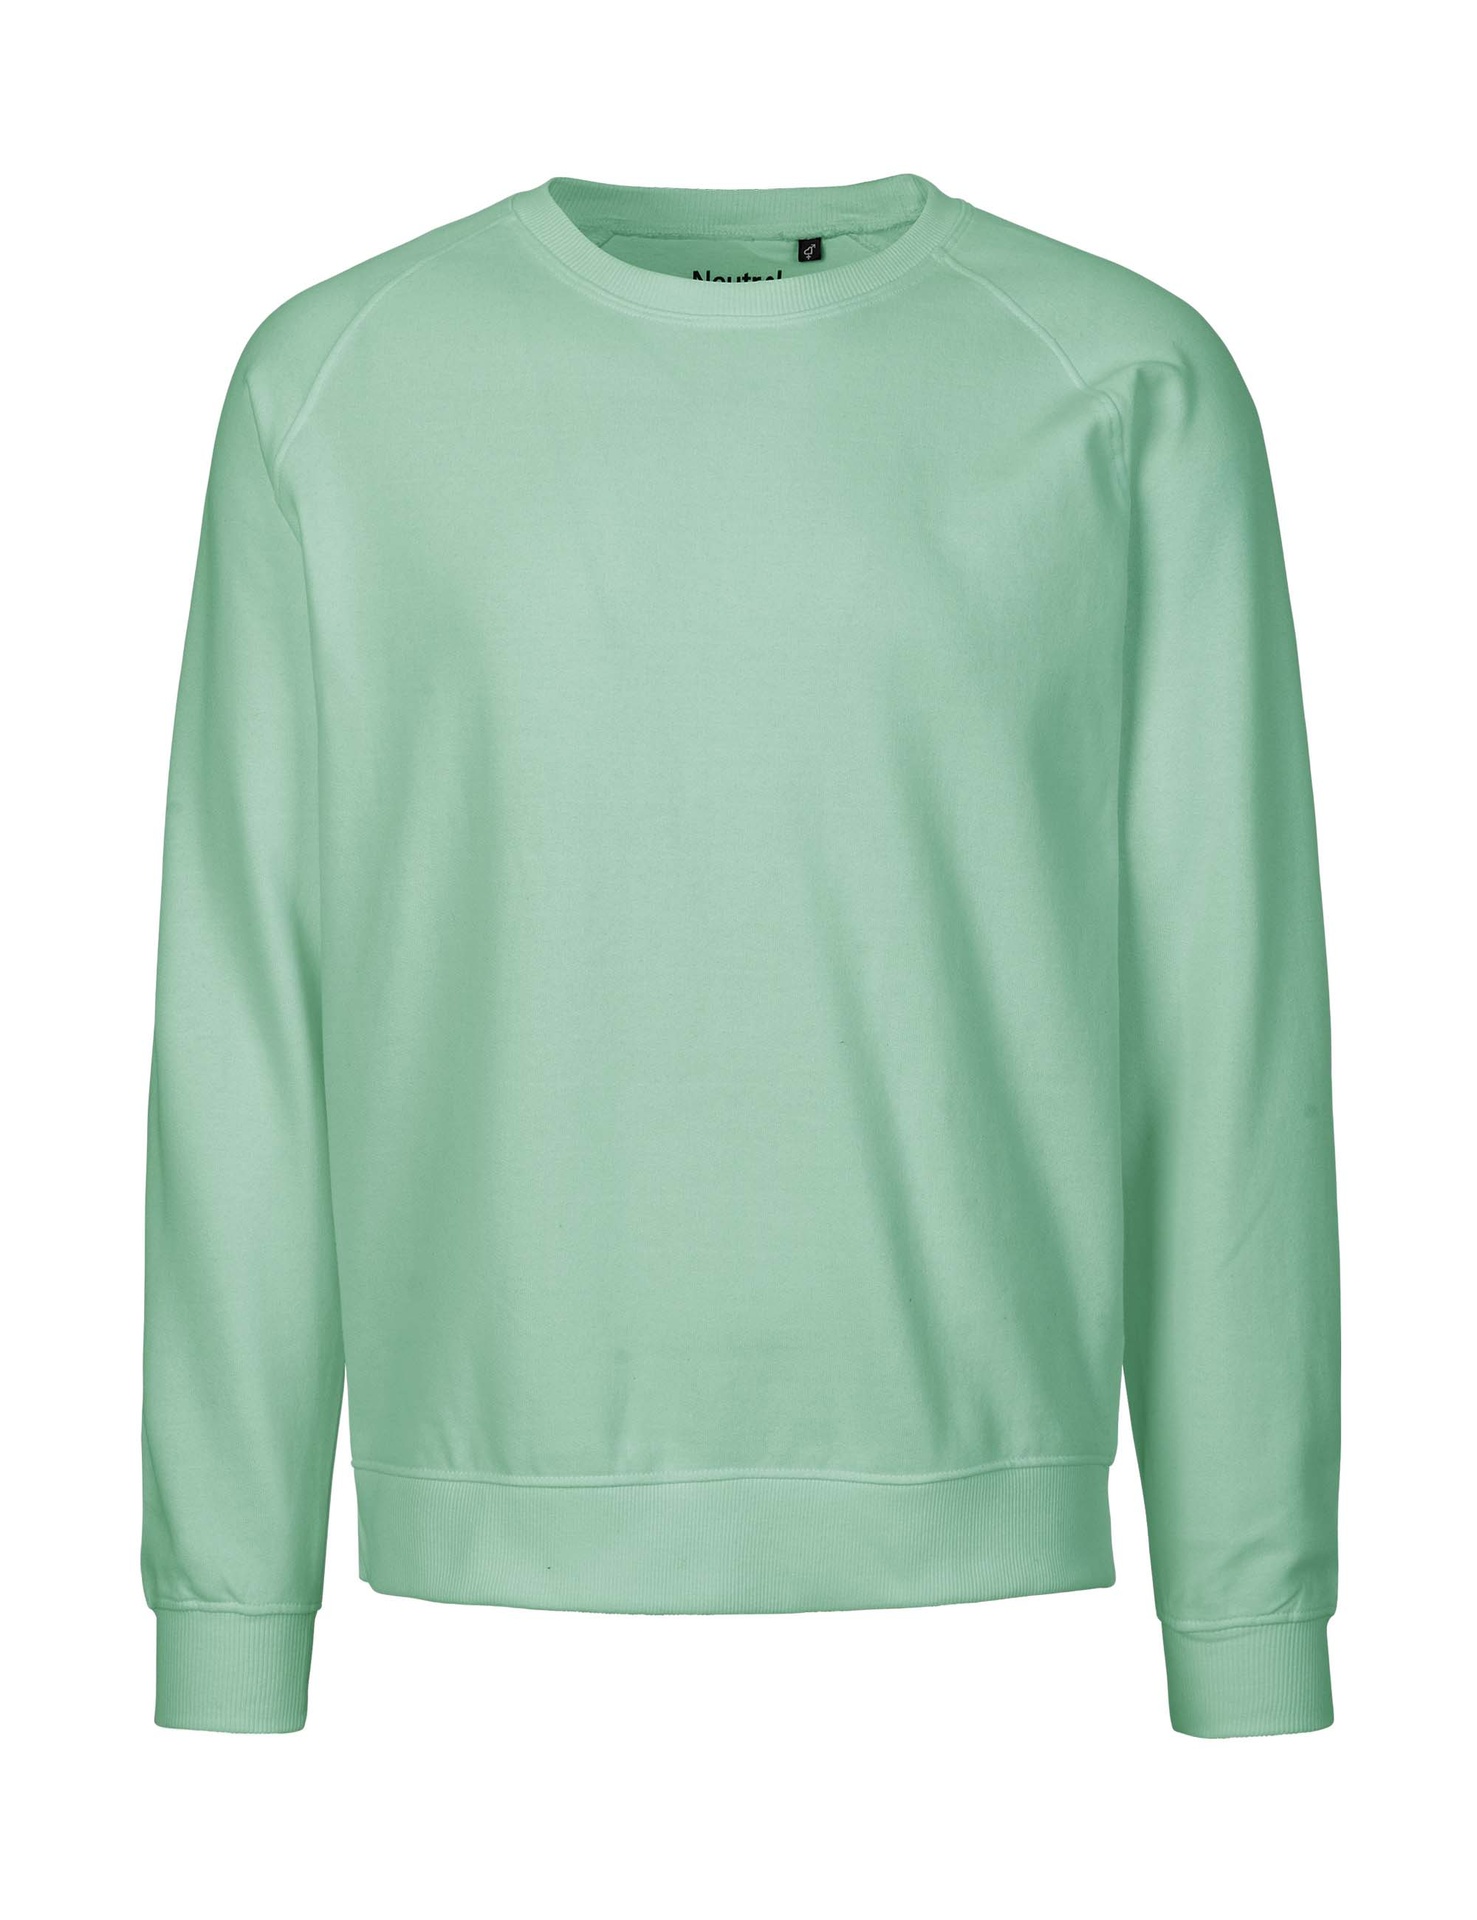 [PR/02824] Unisex Sweatshirt (Dusty Mint 40, S)